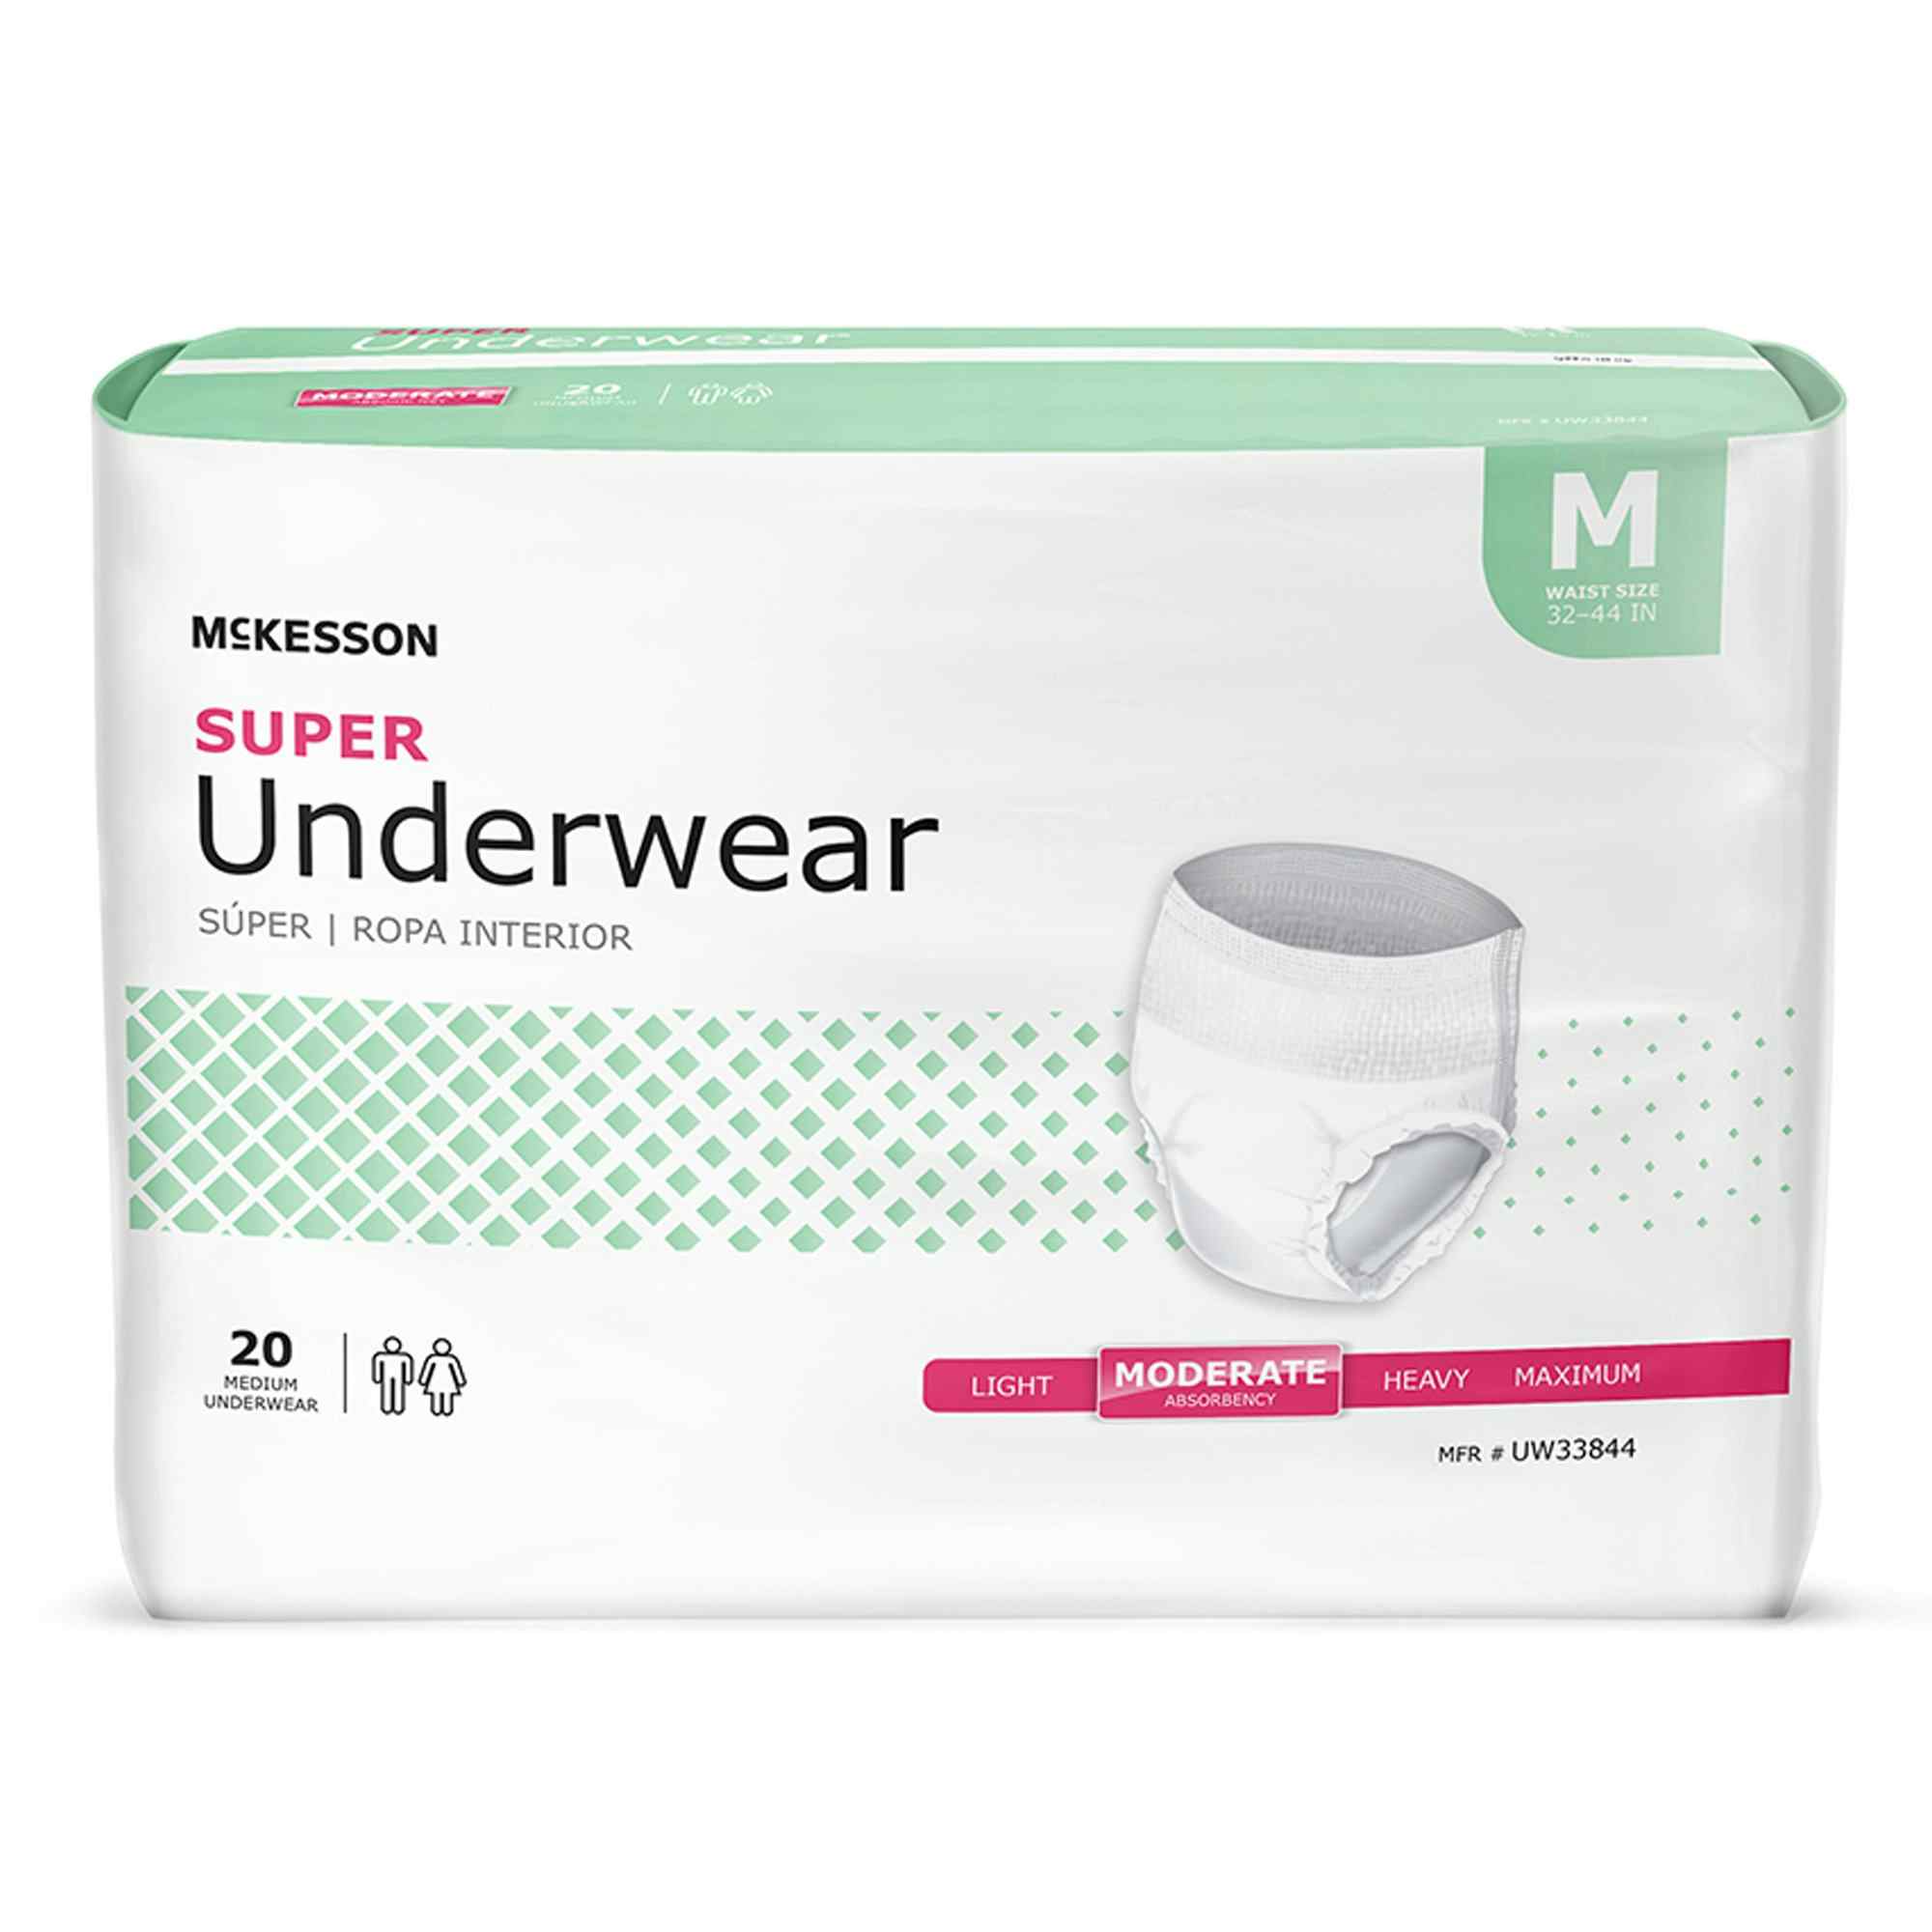 McKesson Super Underwear, Moderate Absorbency